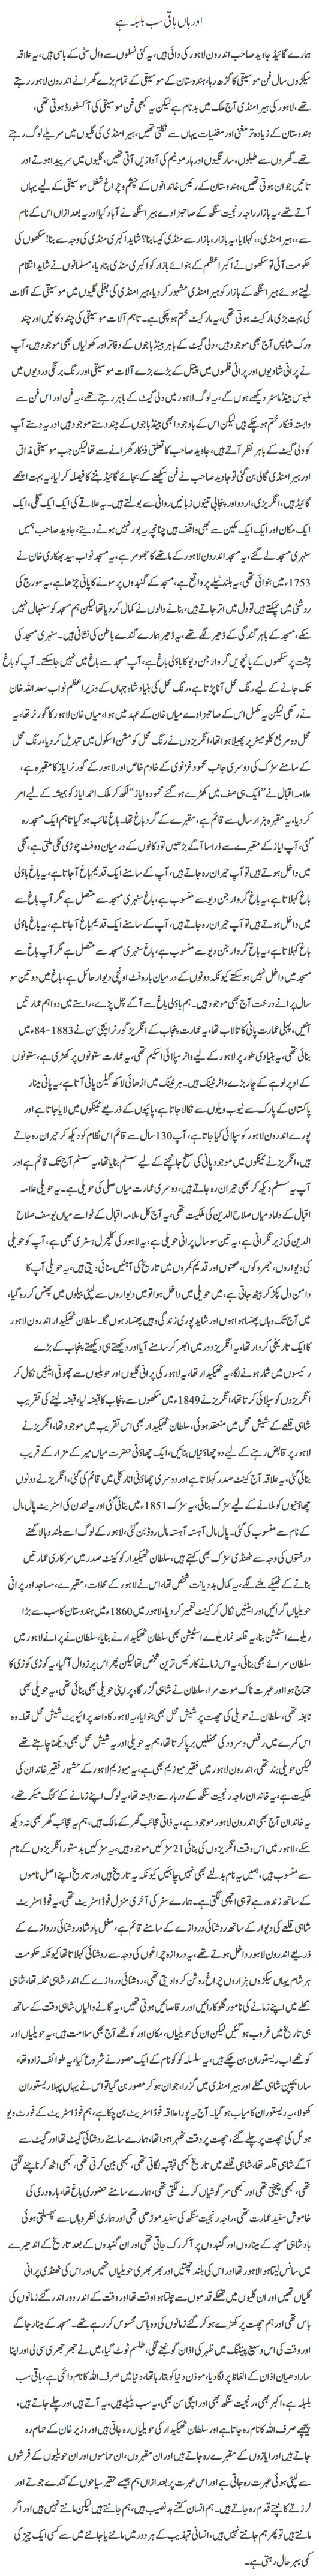 Aur Han Baqi Sab bulbla hai by Javed Chaudhry